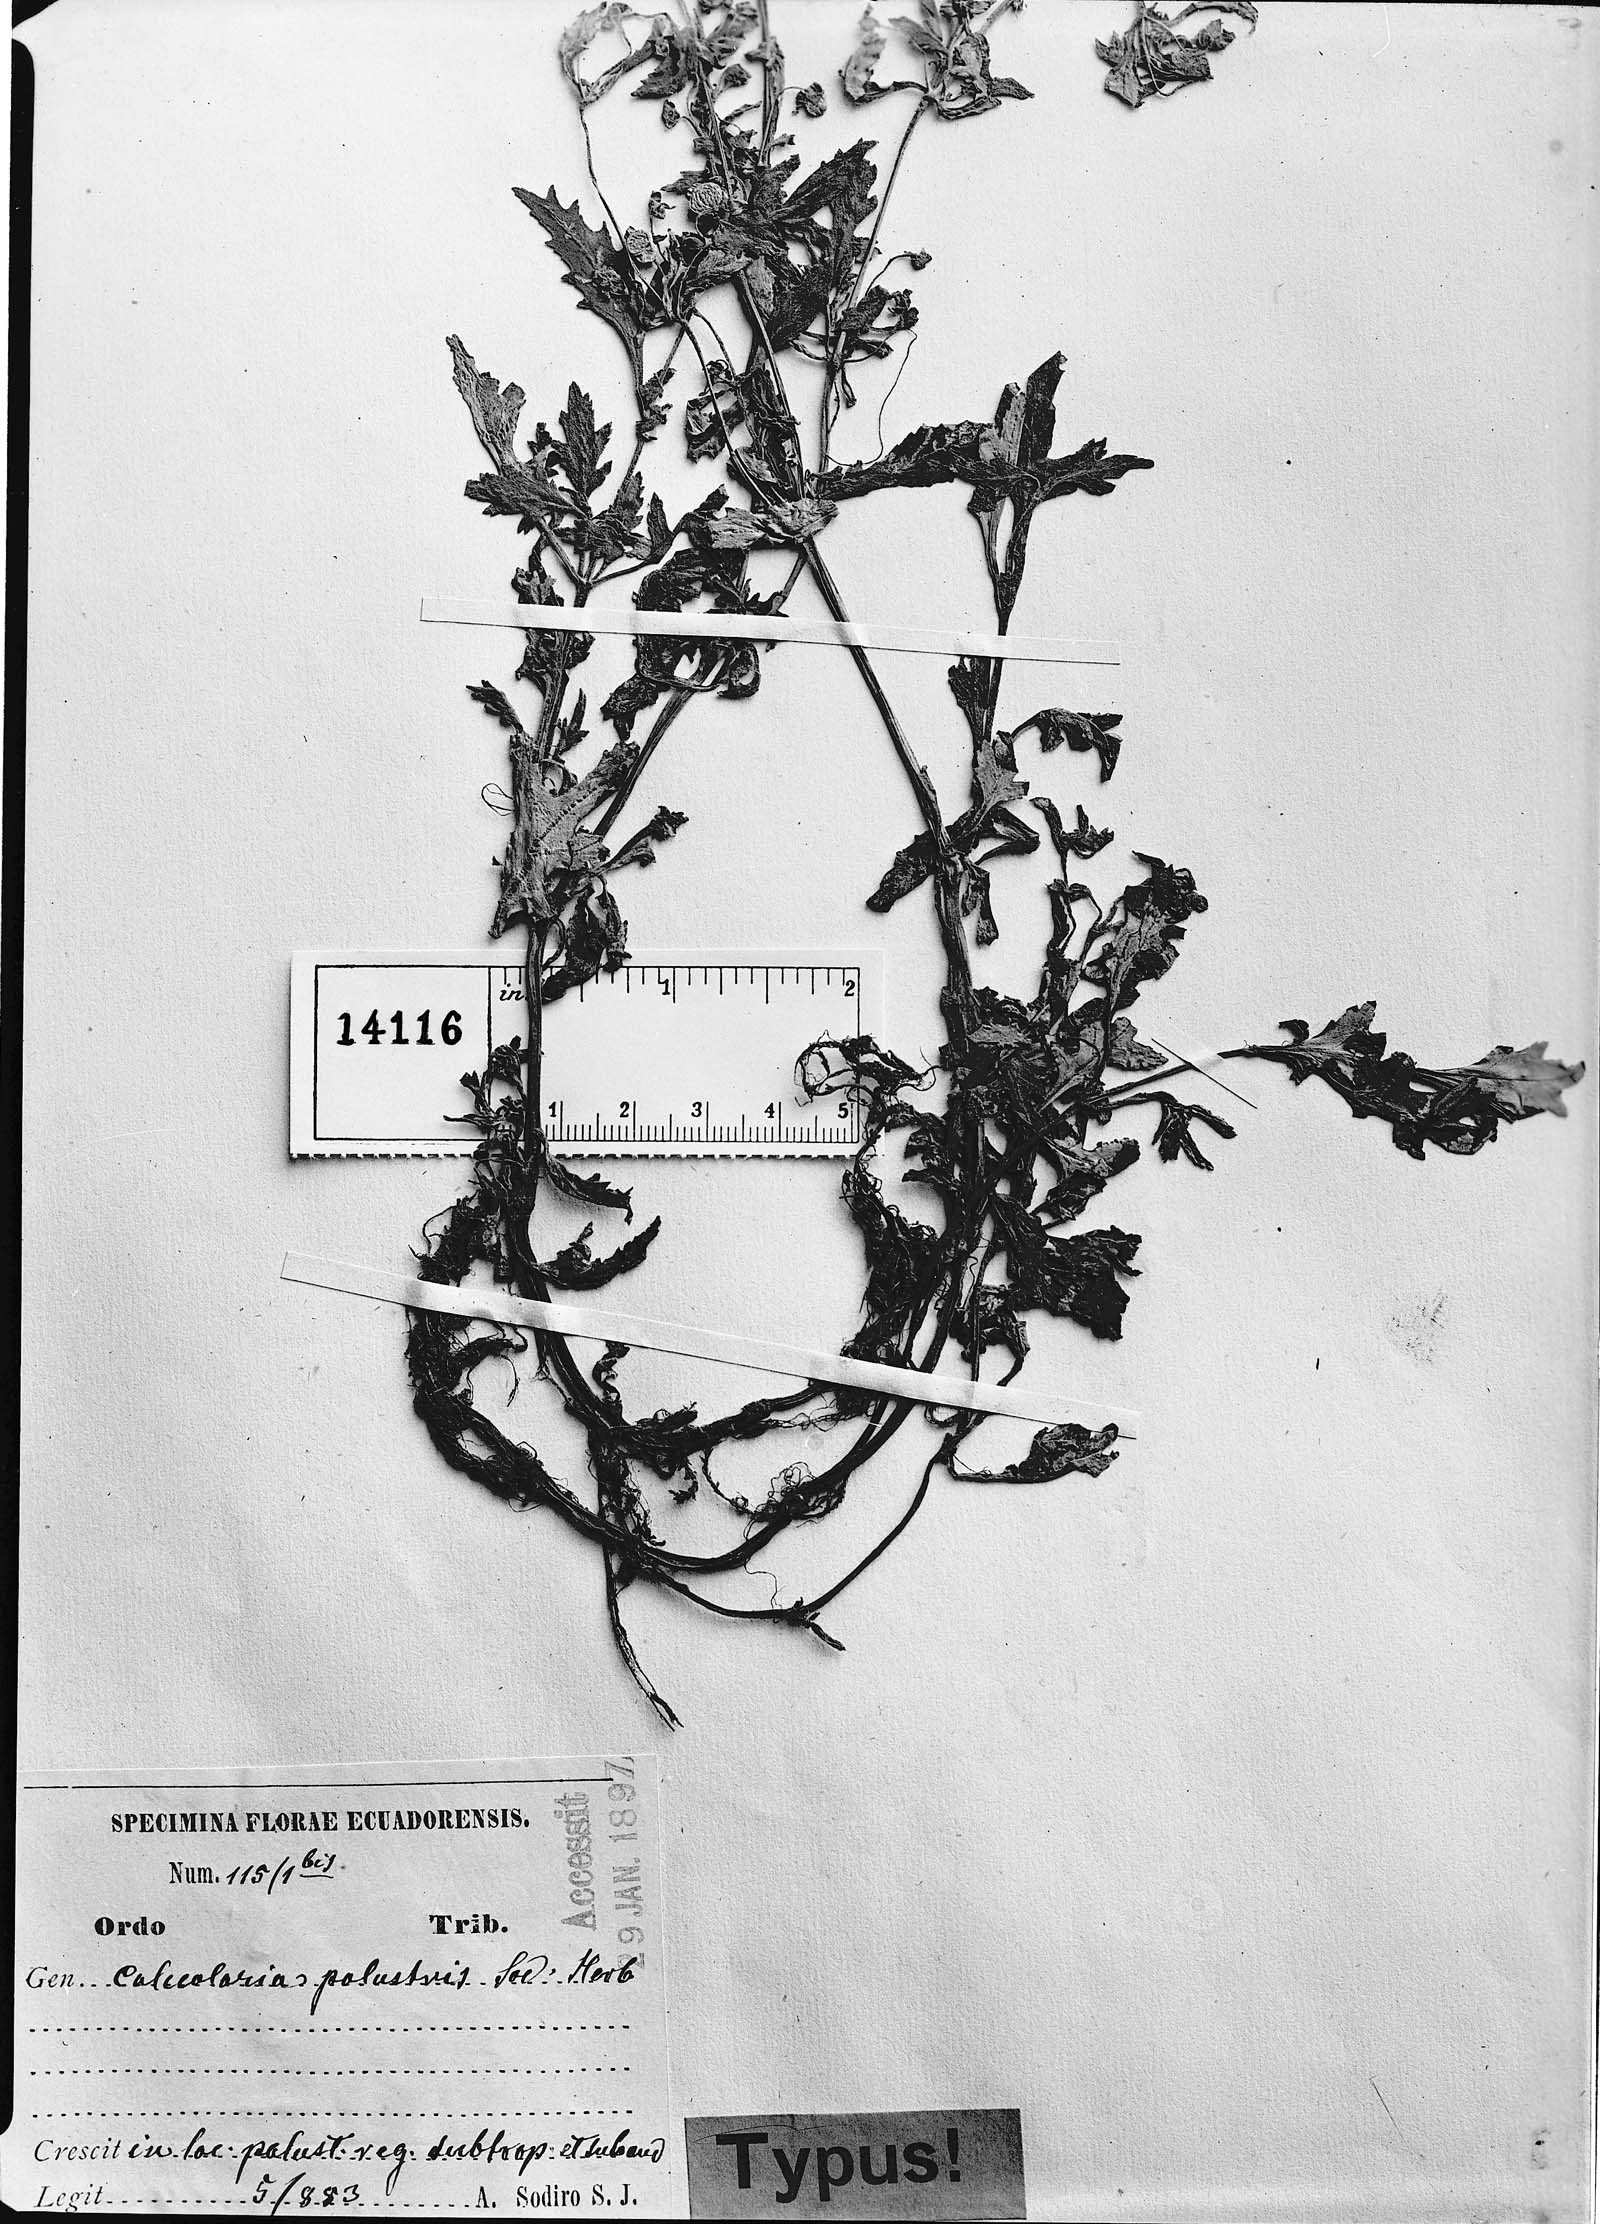 Calceolaria mexicana subsp. mexicana image